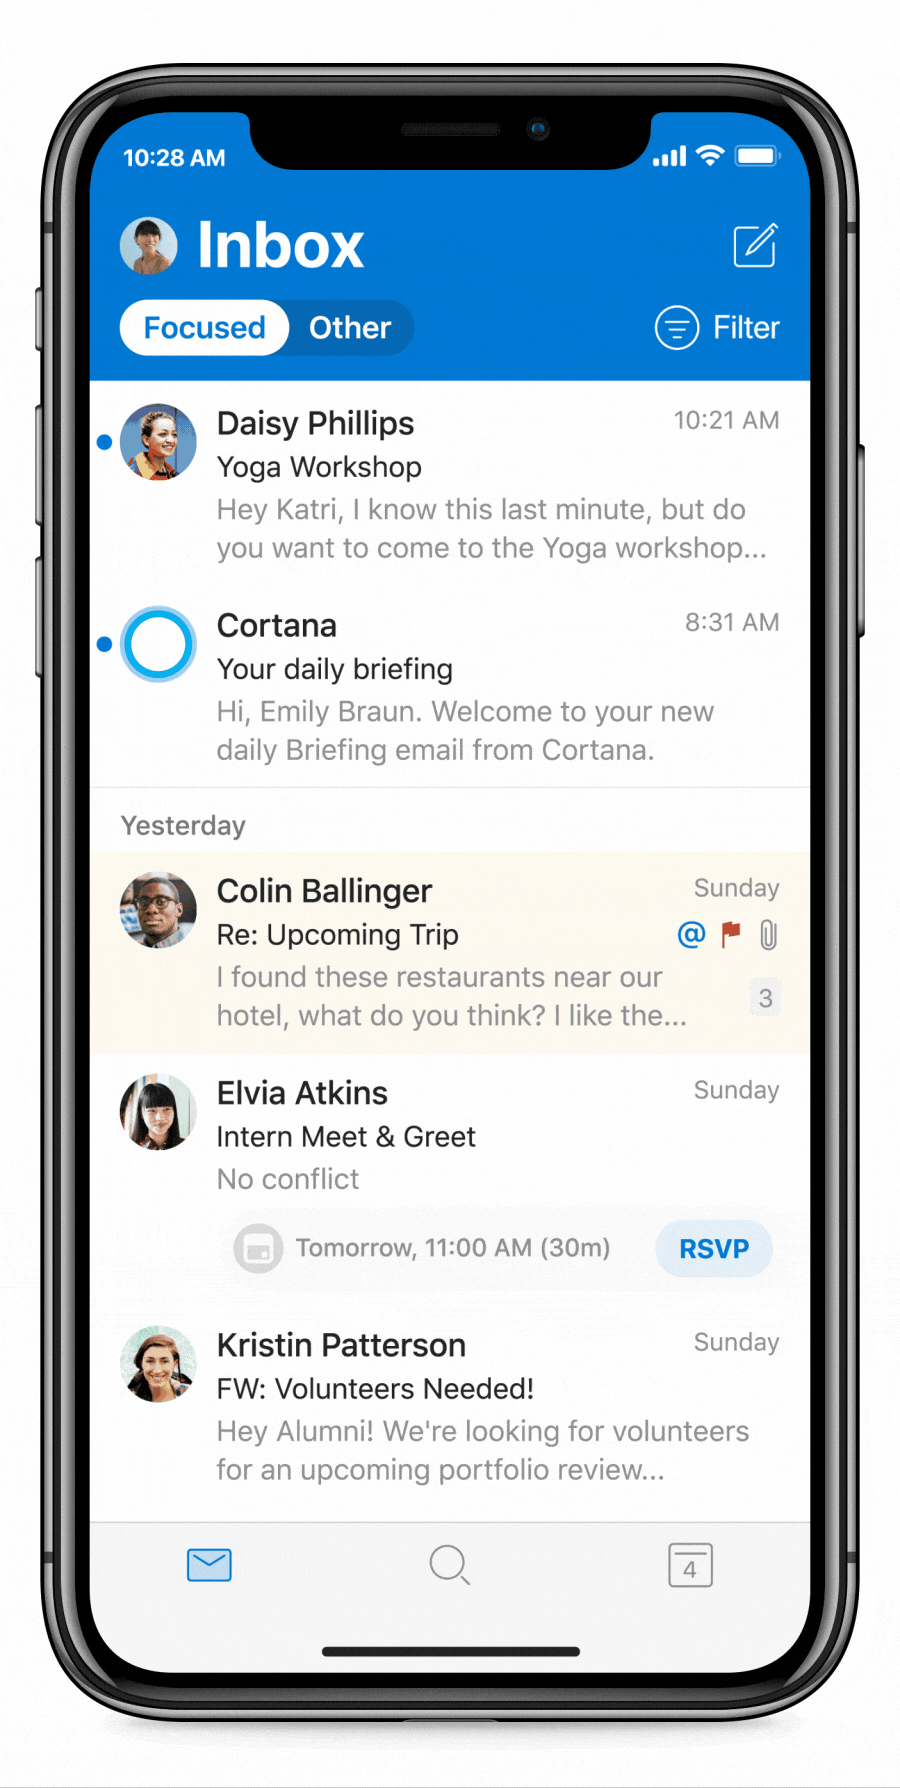 Animoitu kuva Cortanan päivittäiskatsauksista Outlook Mobilessa. Käyttäjä avaa päivittäiskatsauksen, merkitsee laaturaportin valmiiksi, tehtävän tehdyksi ja varaa keskeytyksetöntä työaikaa ennen kalenterinsa tarkastelemista.